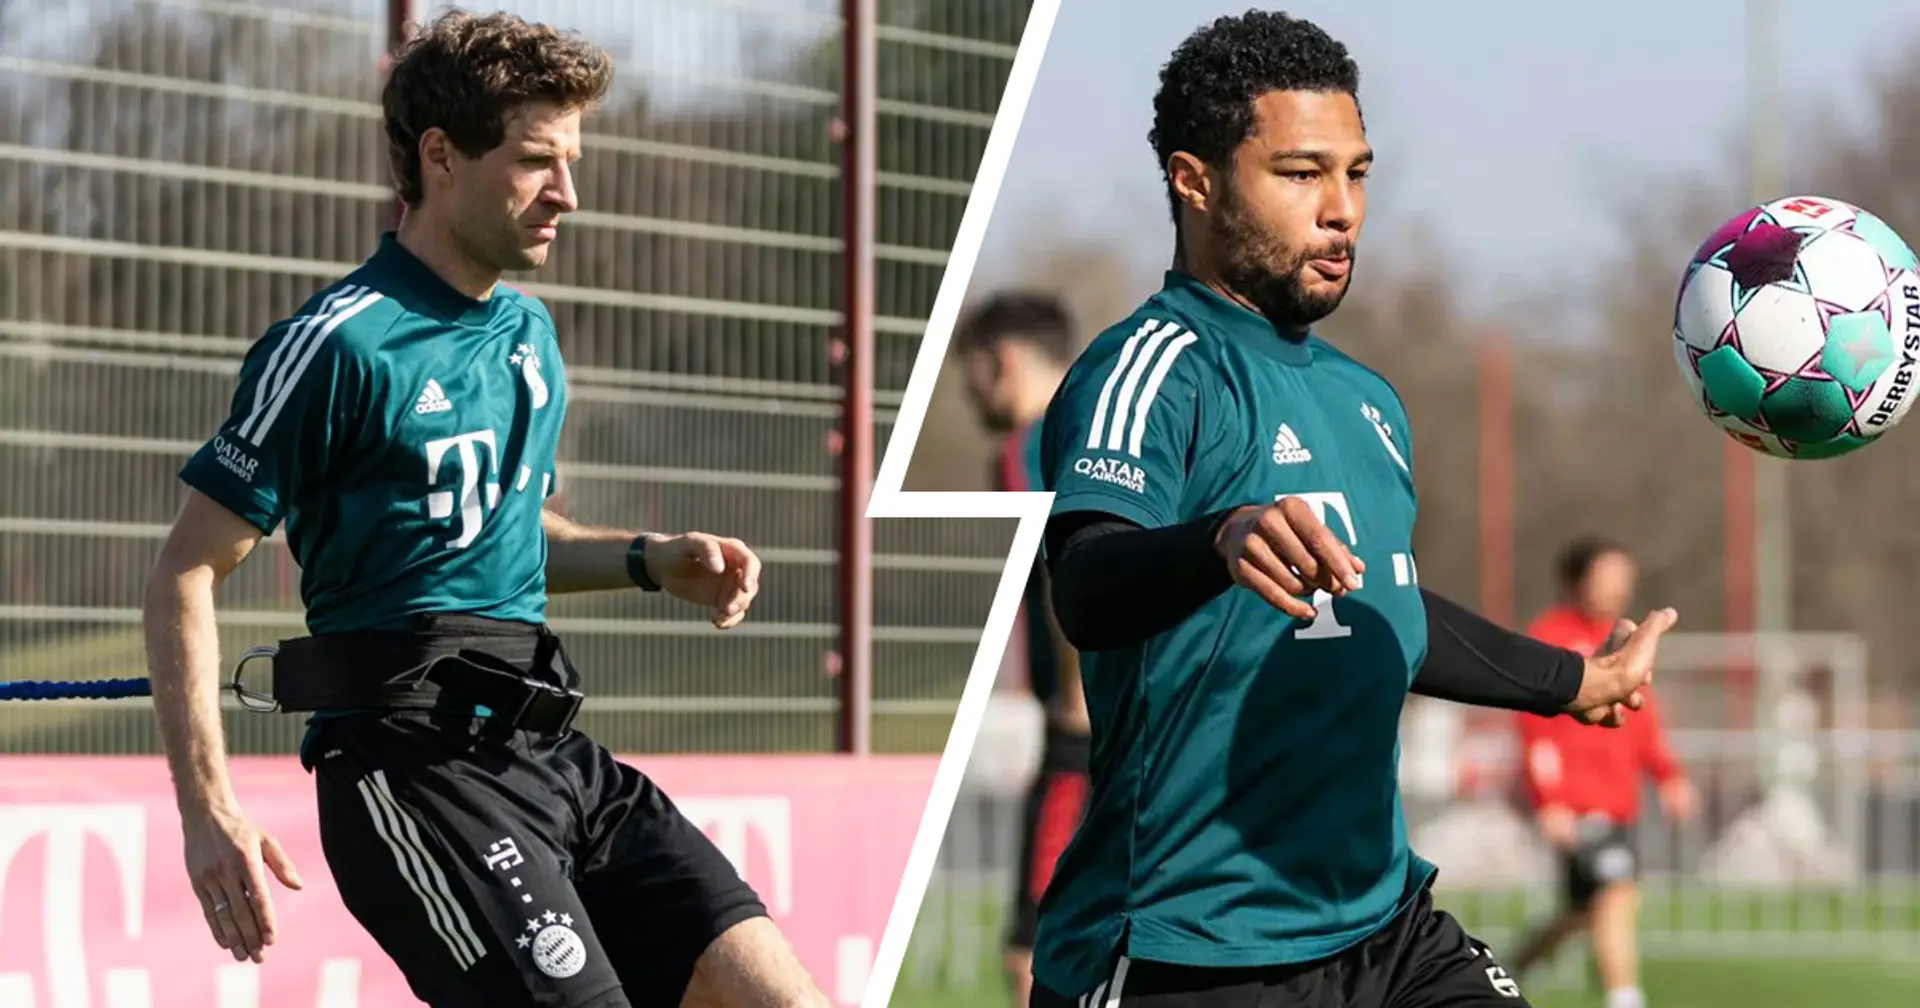 Flick bestätigt: Müller und Gnabry sind für das Spiel vs. Köln verfügbar!